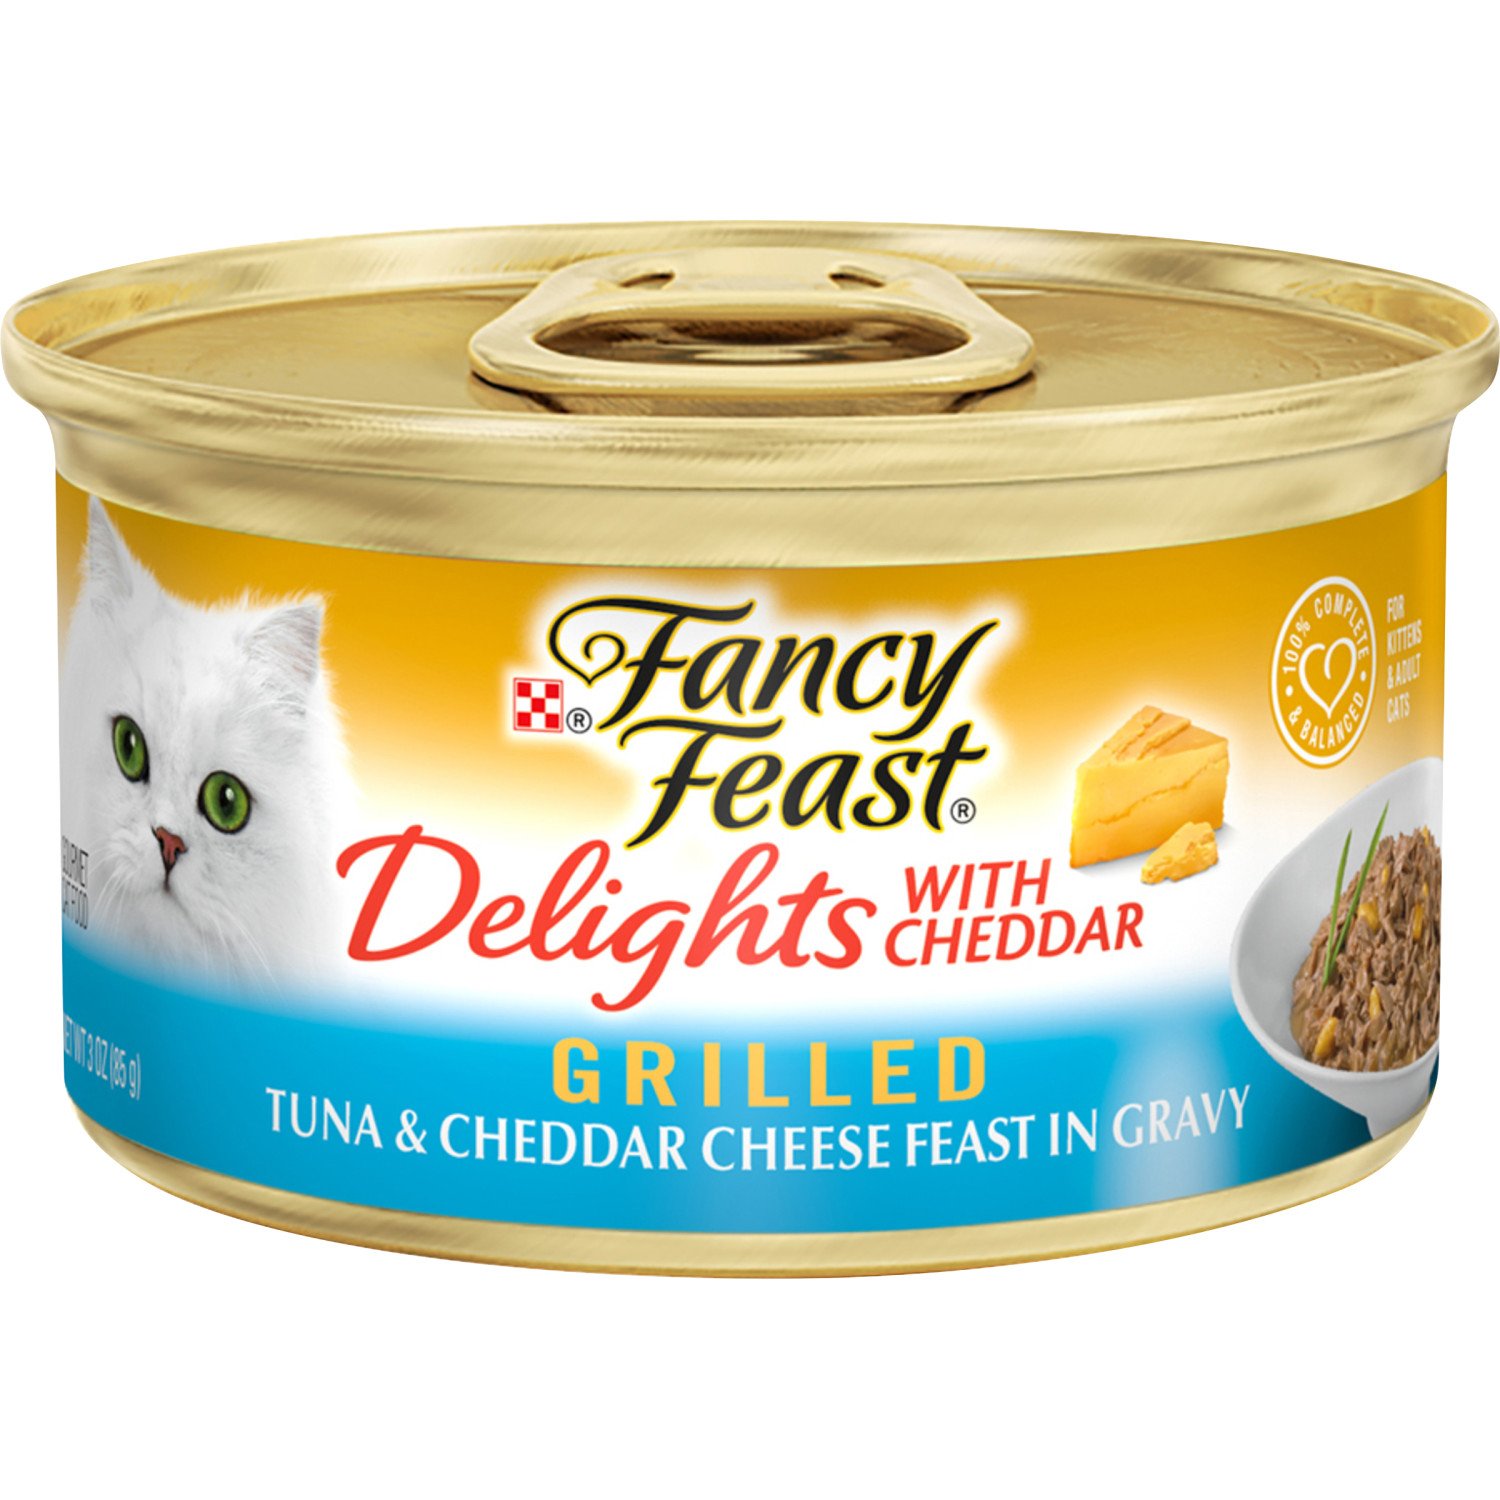 fancy feast tuna in gravy